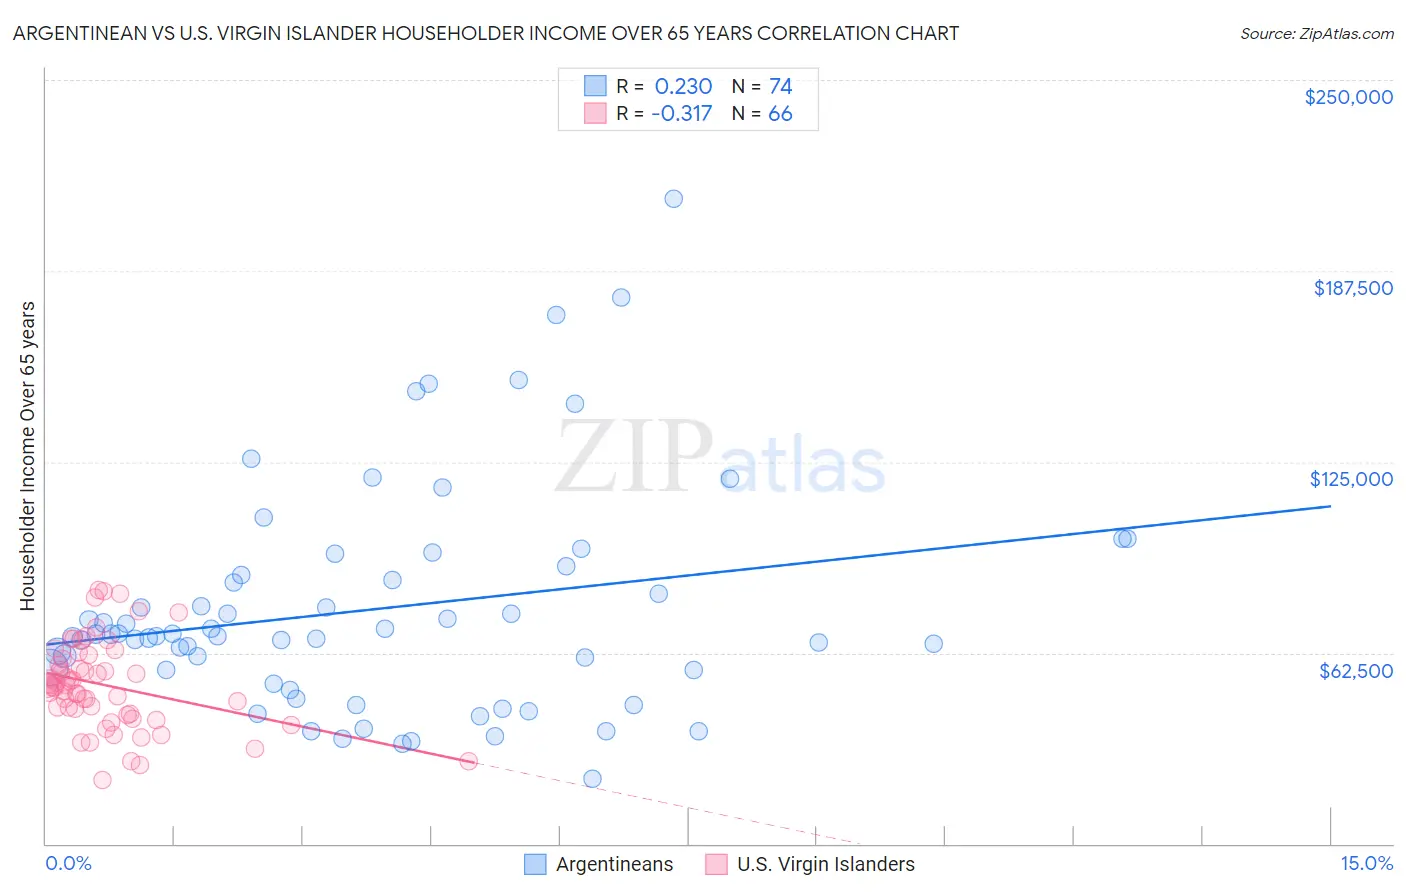 Argentinean vs U.S. Virgin Islander Householder Income Over 65 years